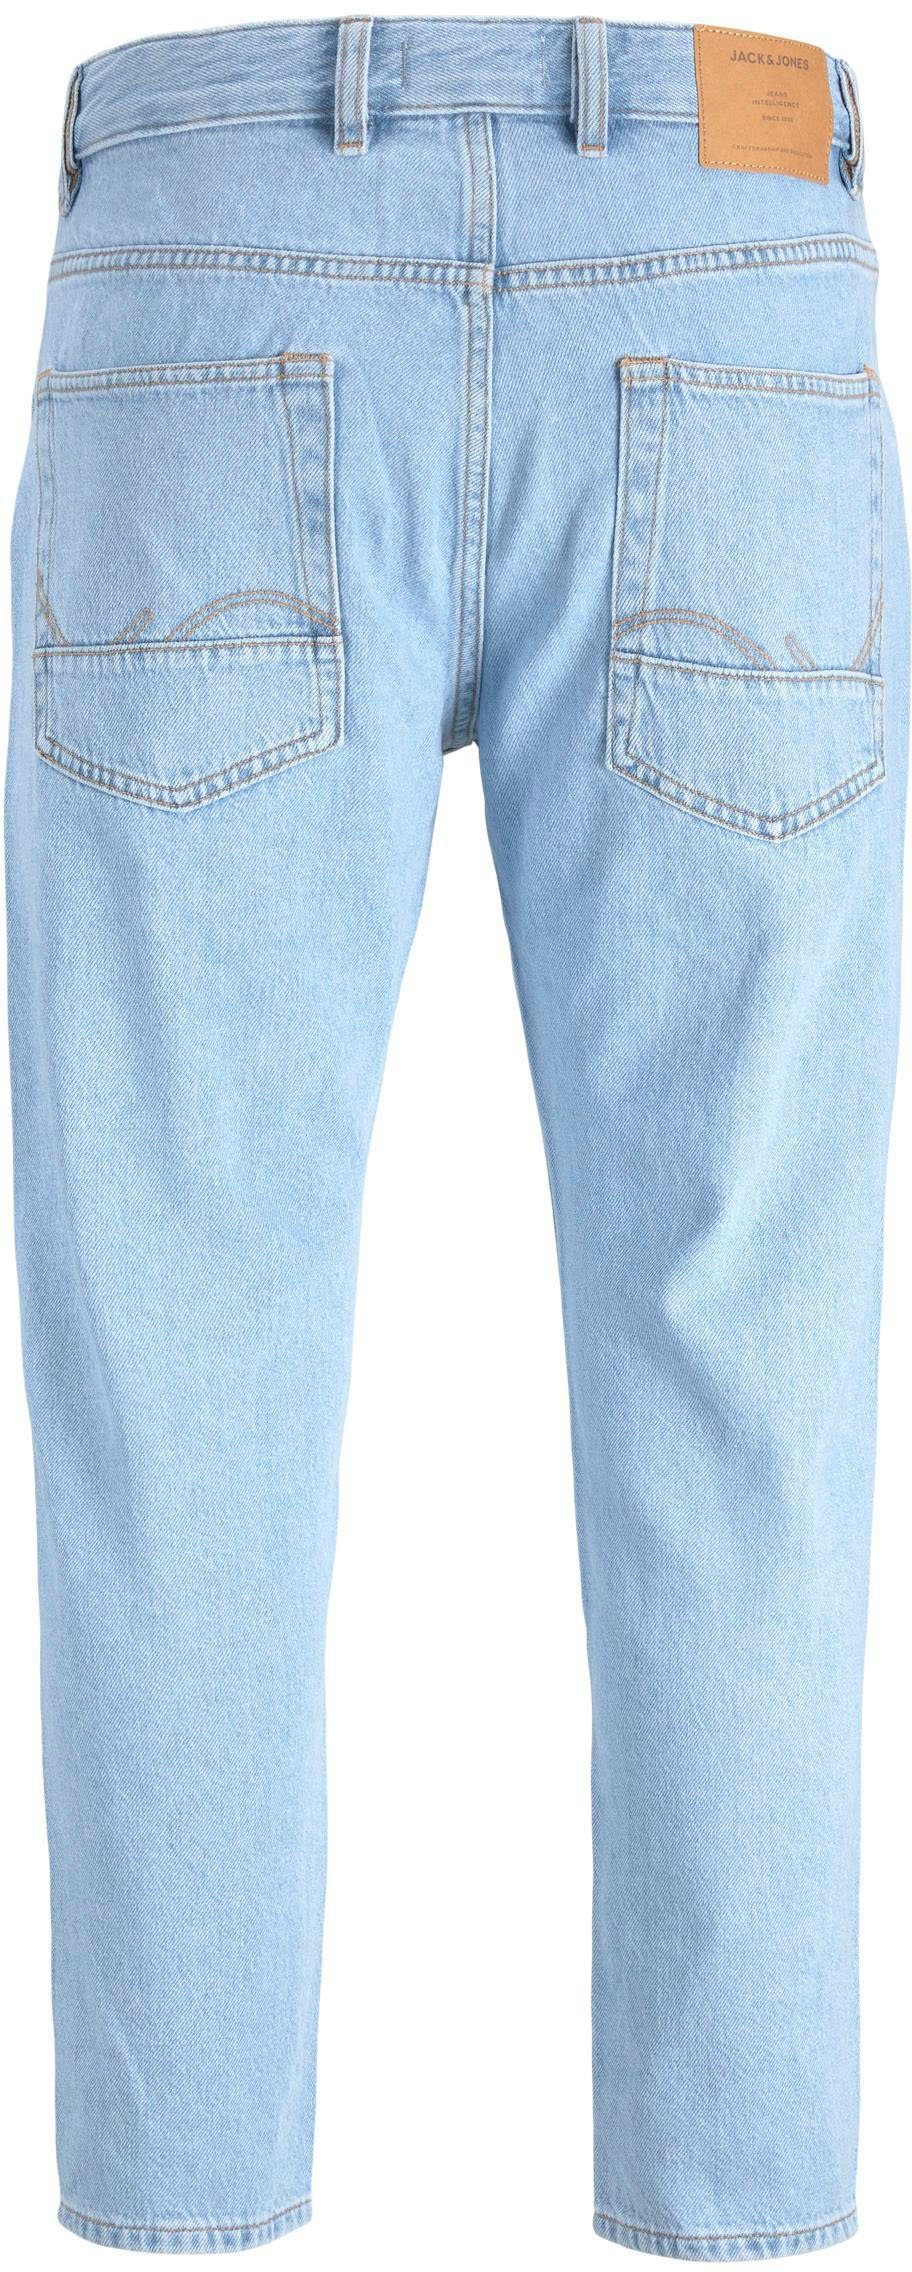 Jack & Jones Tapered-fit-Jeans CROPPED JJORIGINAL blue denim JJIFRANK